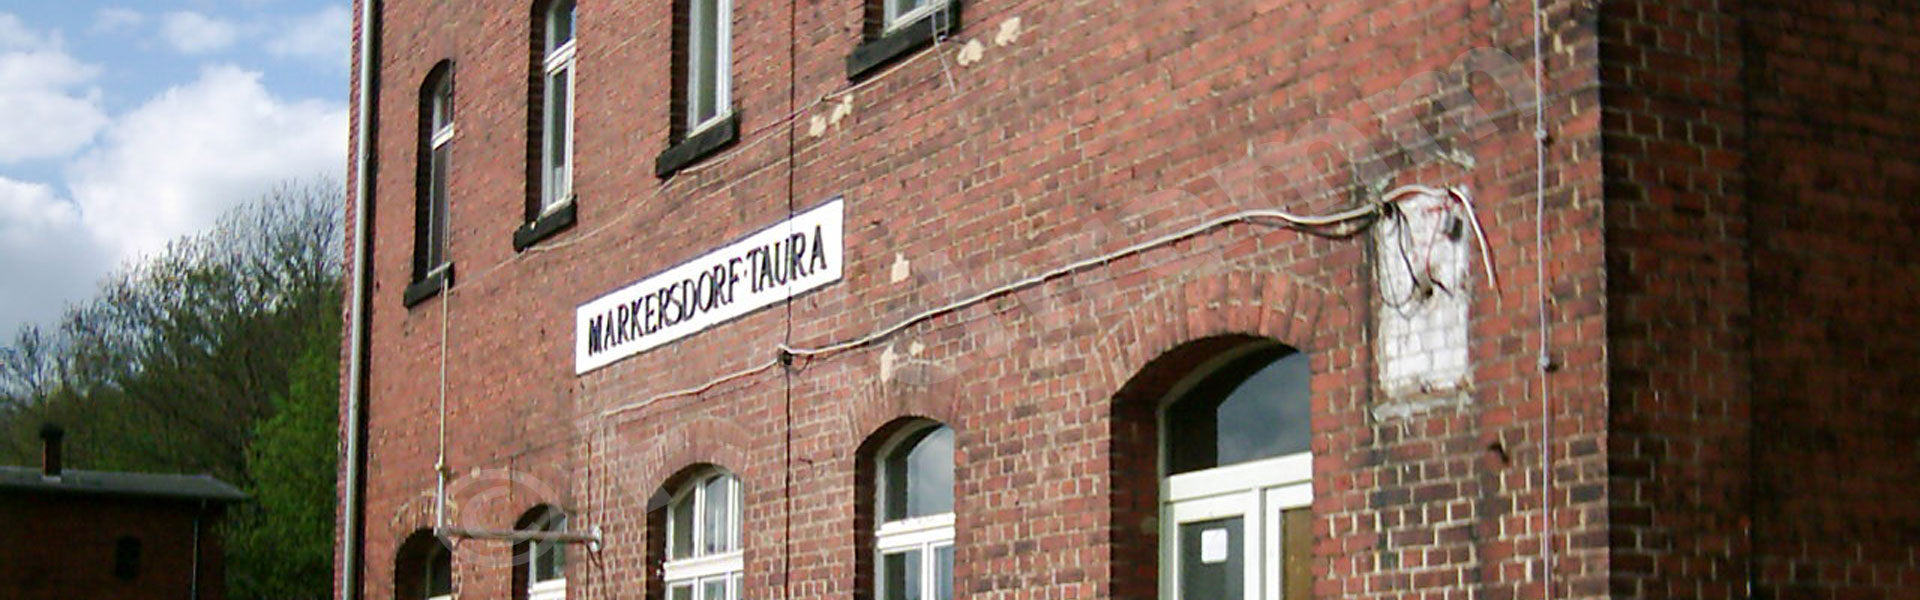 Fehlende dreieckige Bahnhofsuhr am Bahnhofsgebäude (2003)